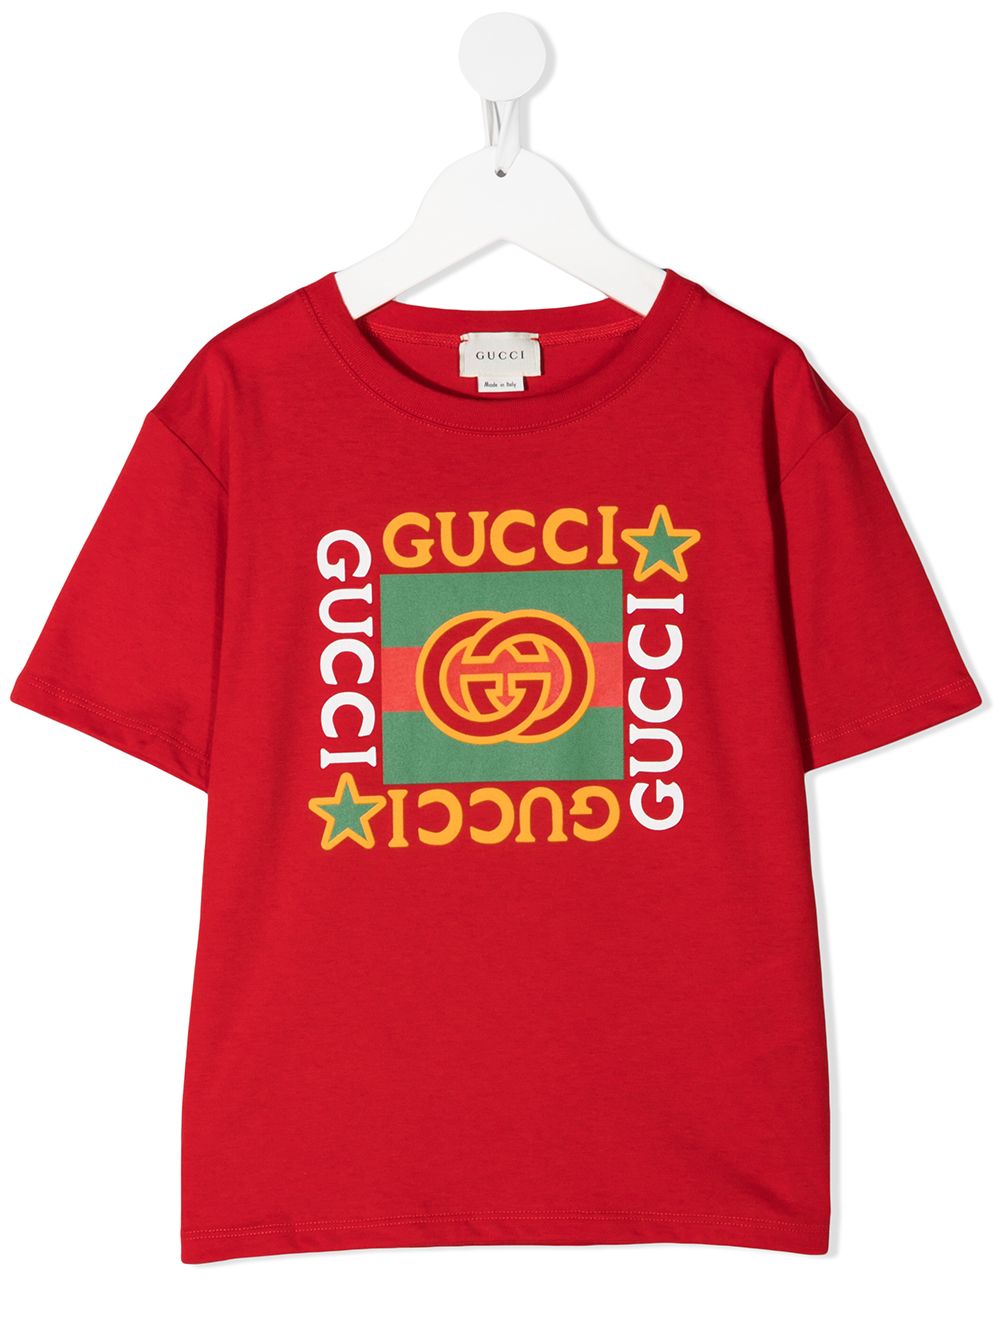 фото Gucci kids футболка с логотипом